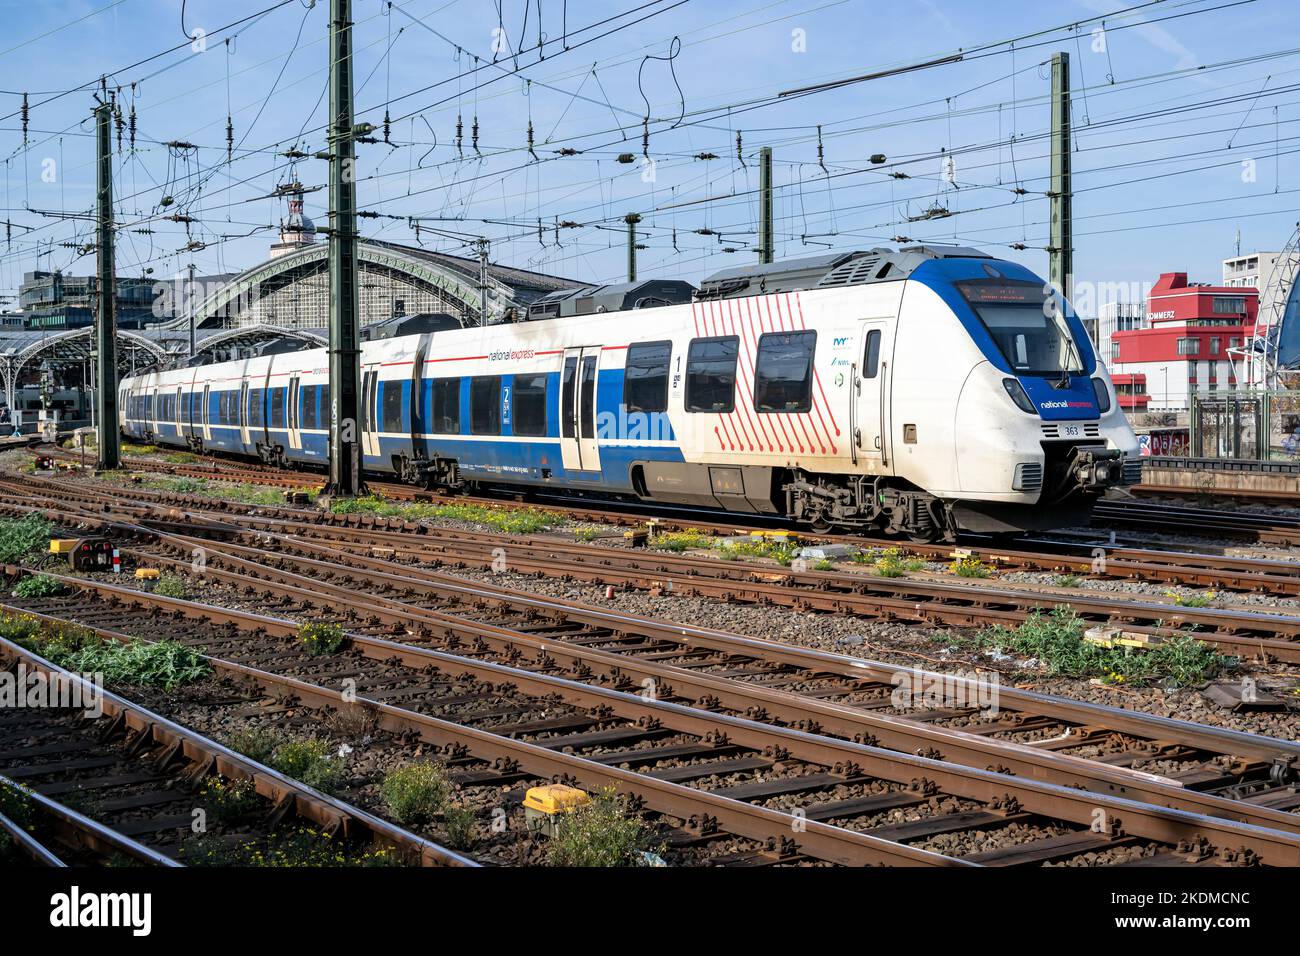 Treno regionale National Express Bombardier Talent 2 alla stazione centrale di Colonia Foto Stock